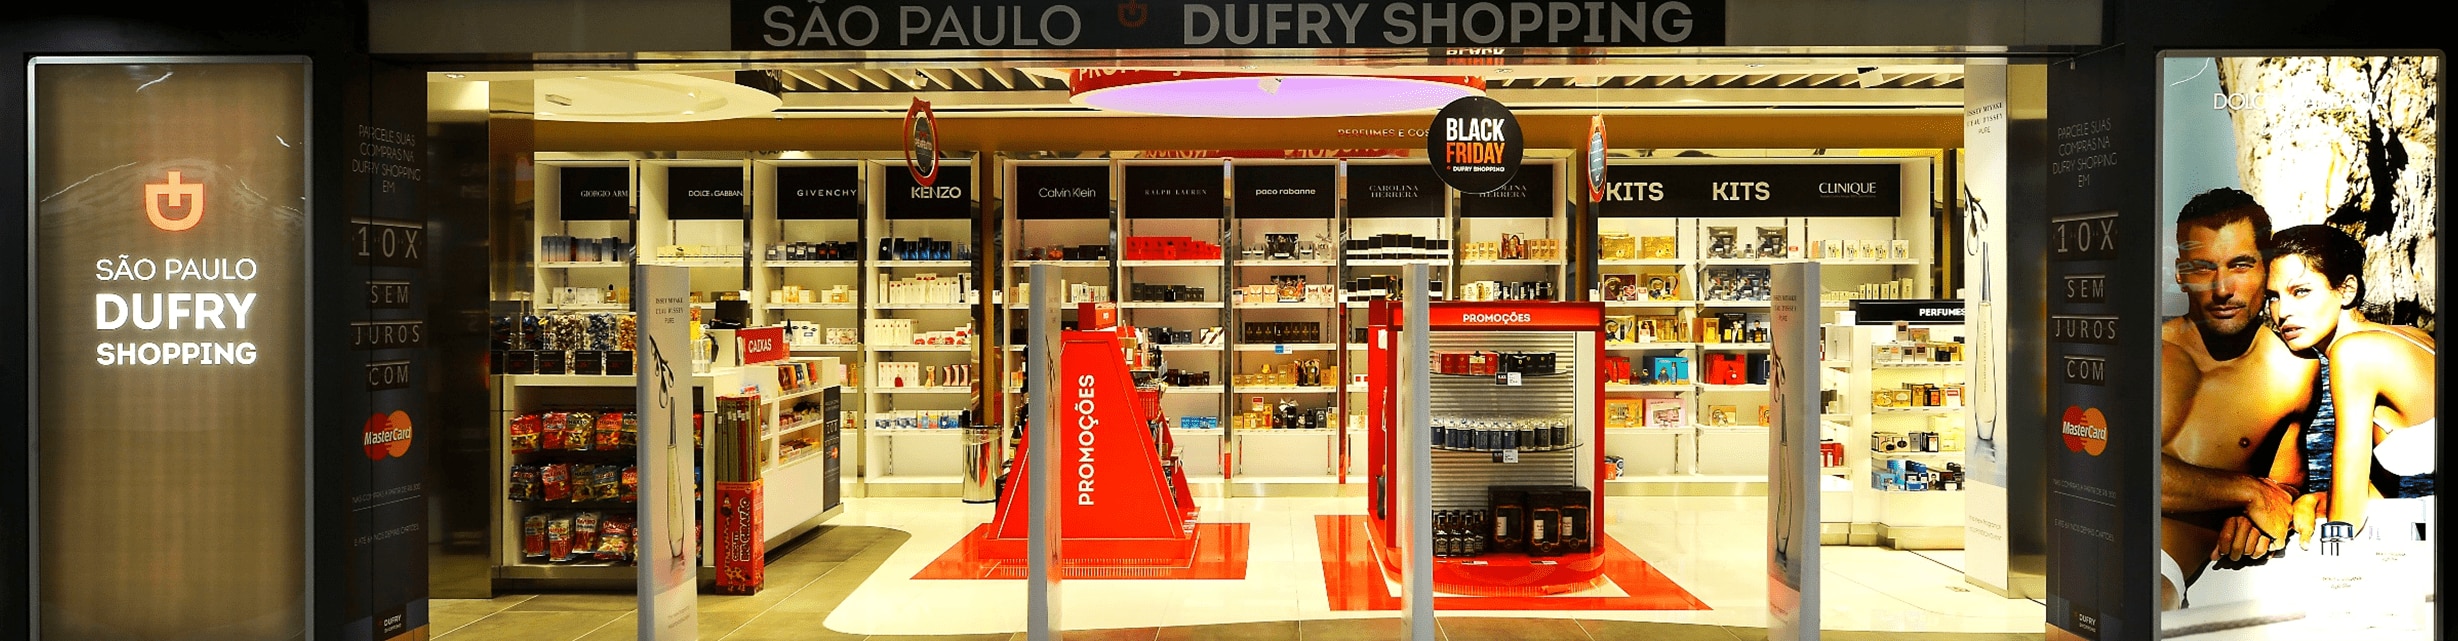 Dufry oferece experiência varejista exclusiva para clientes 123milhas | Dufry Shopping | Conexão123